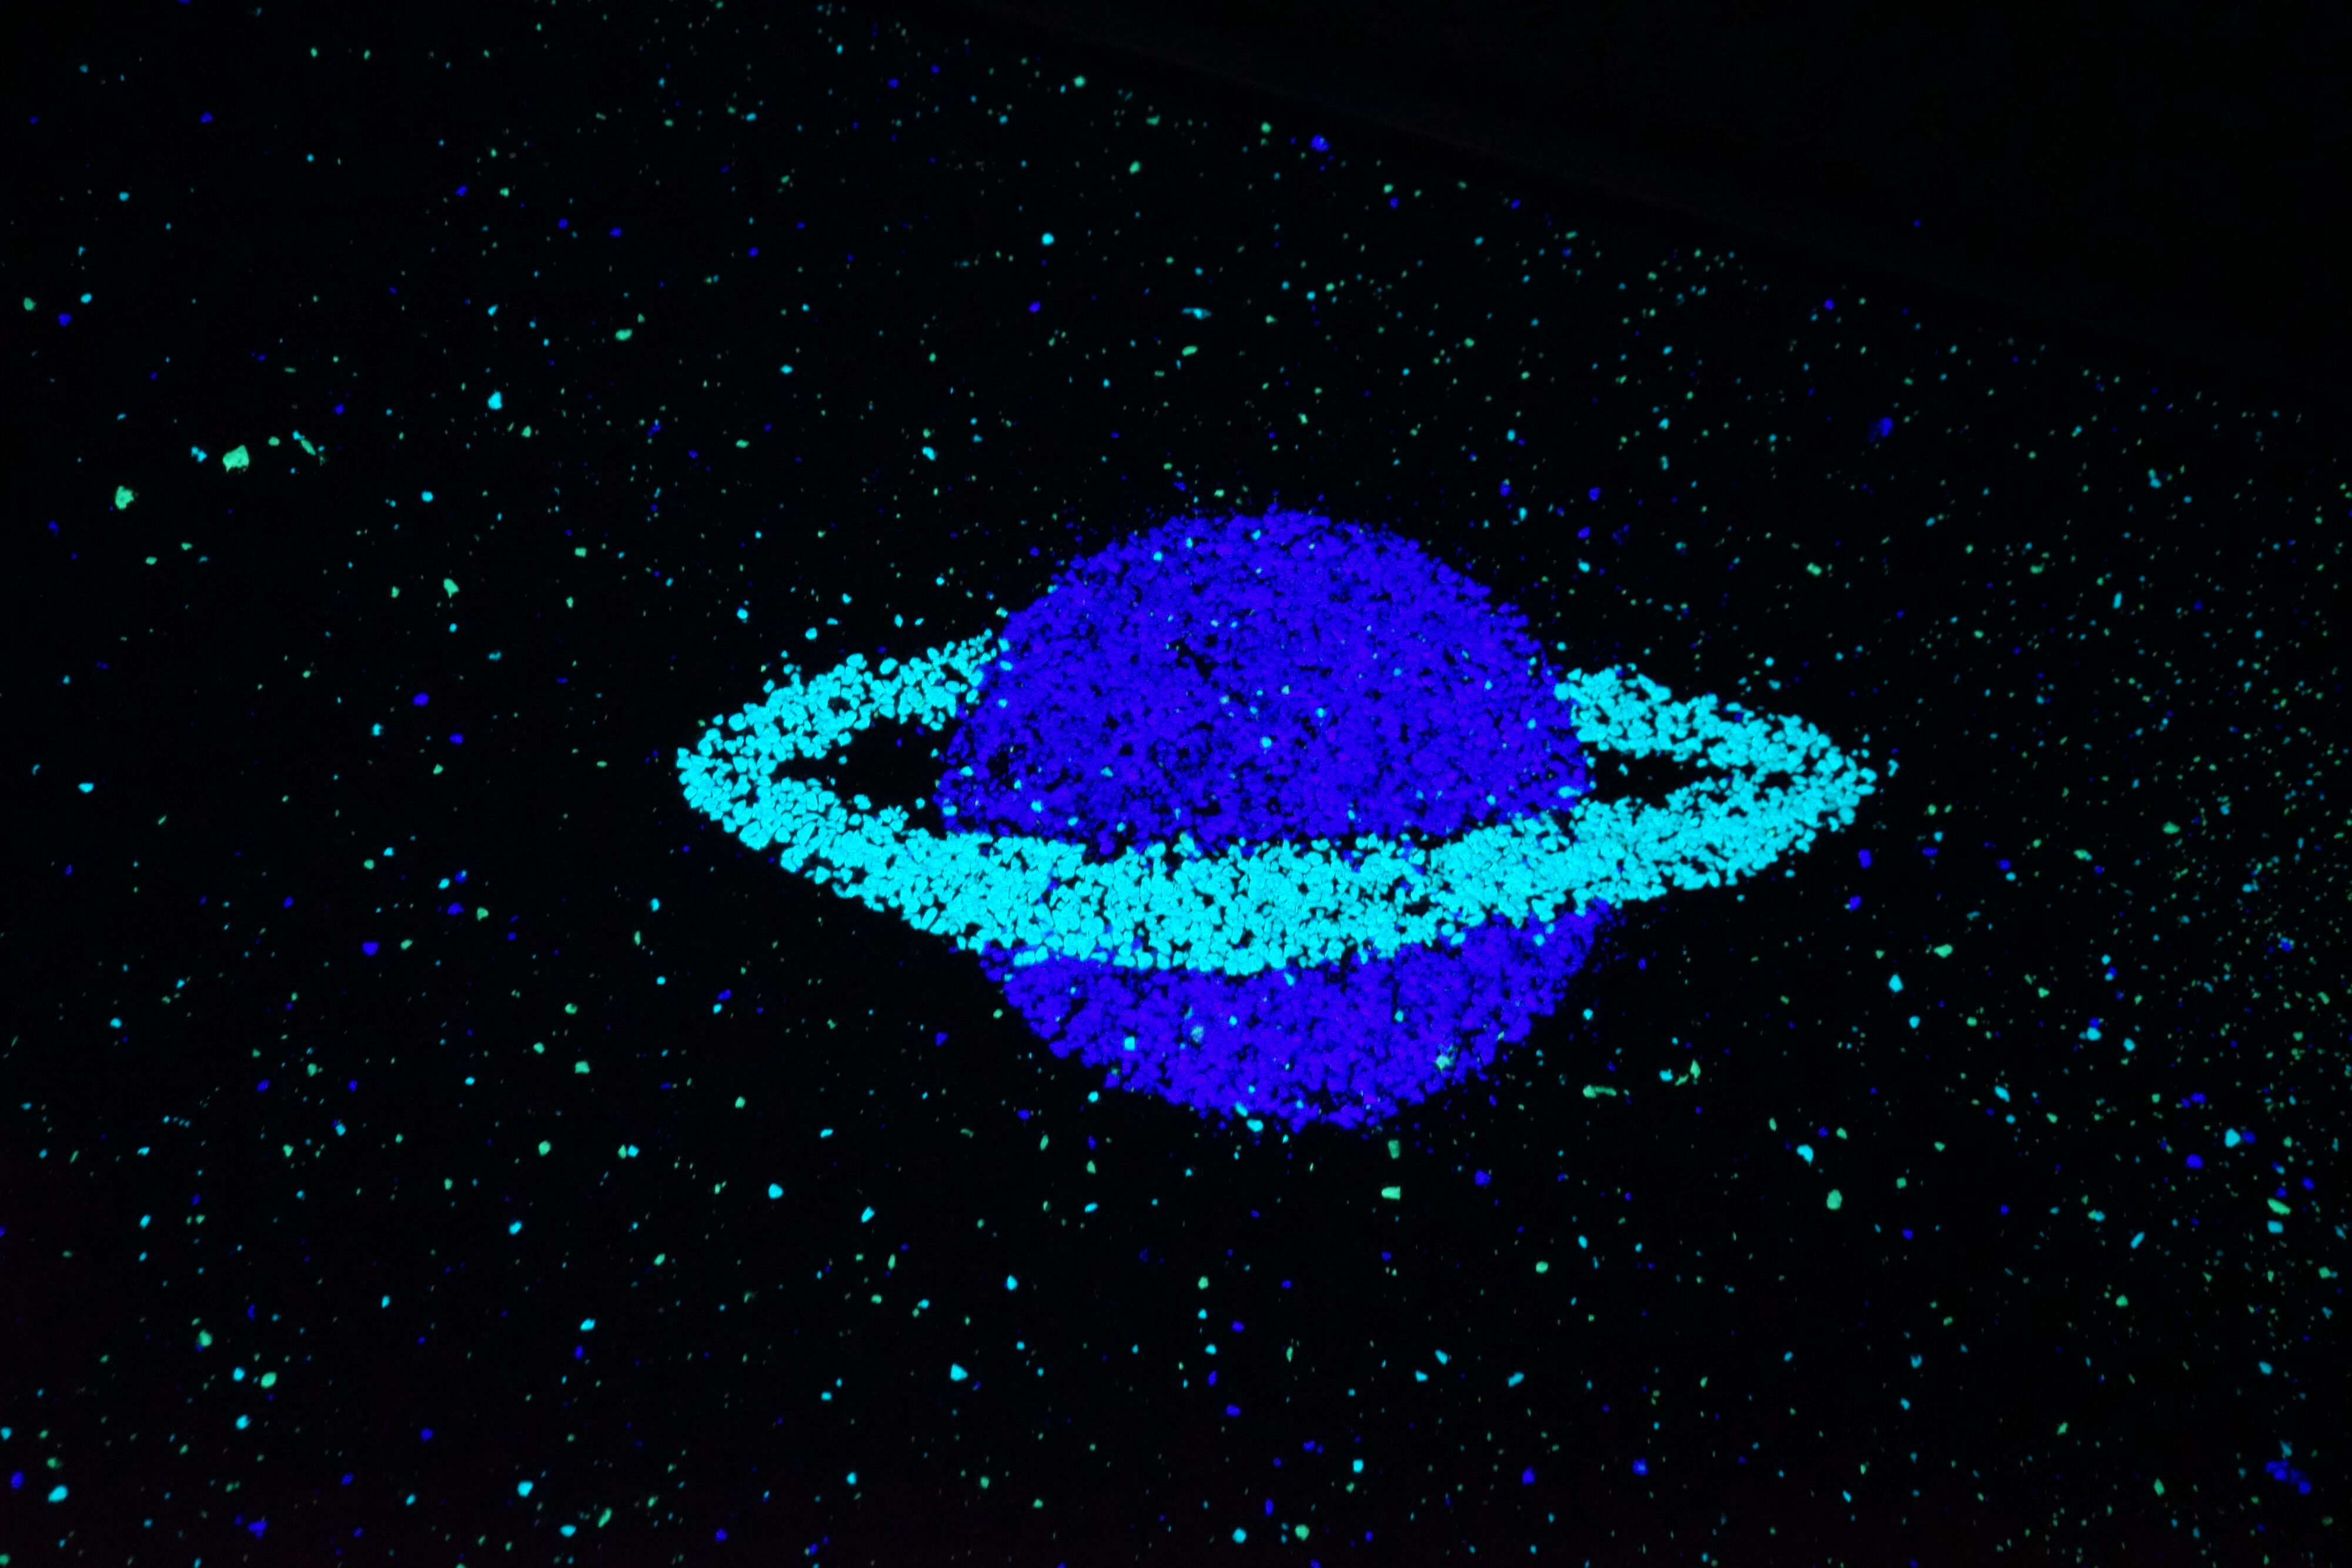 Blick auf den mit Schwarzlicht angeleuchteten Boden der Aussichtsplattform: grün-blau leuchtende Sprenkel und ein Planet mit Ring sind zu sehen.